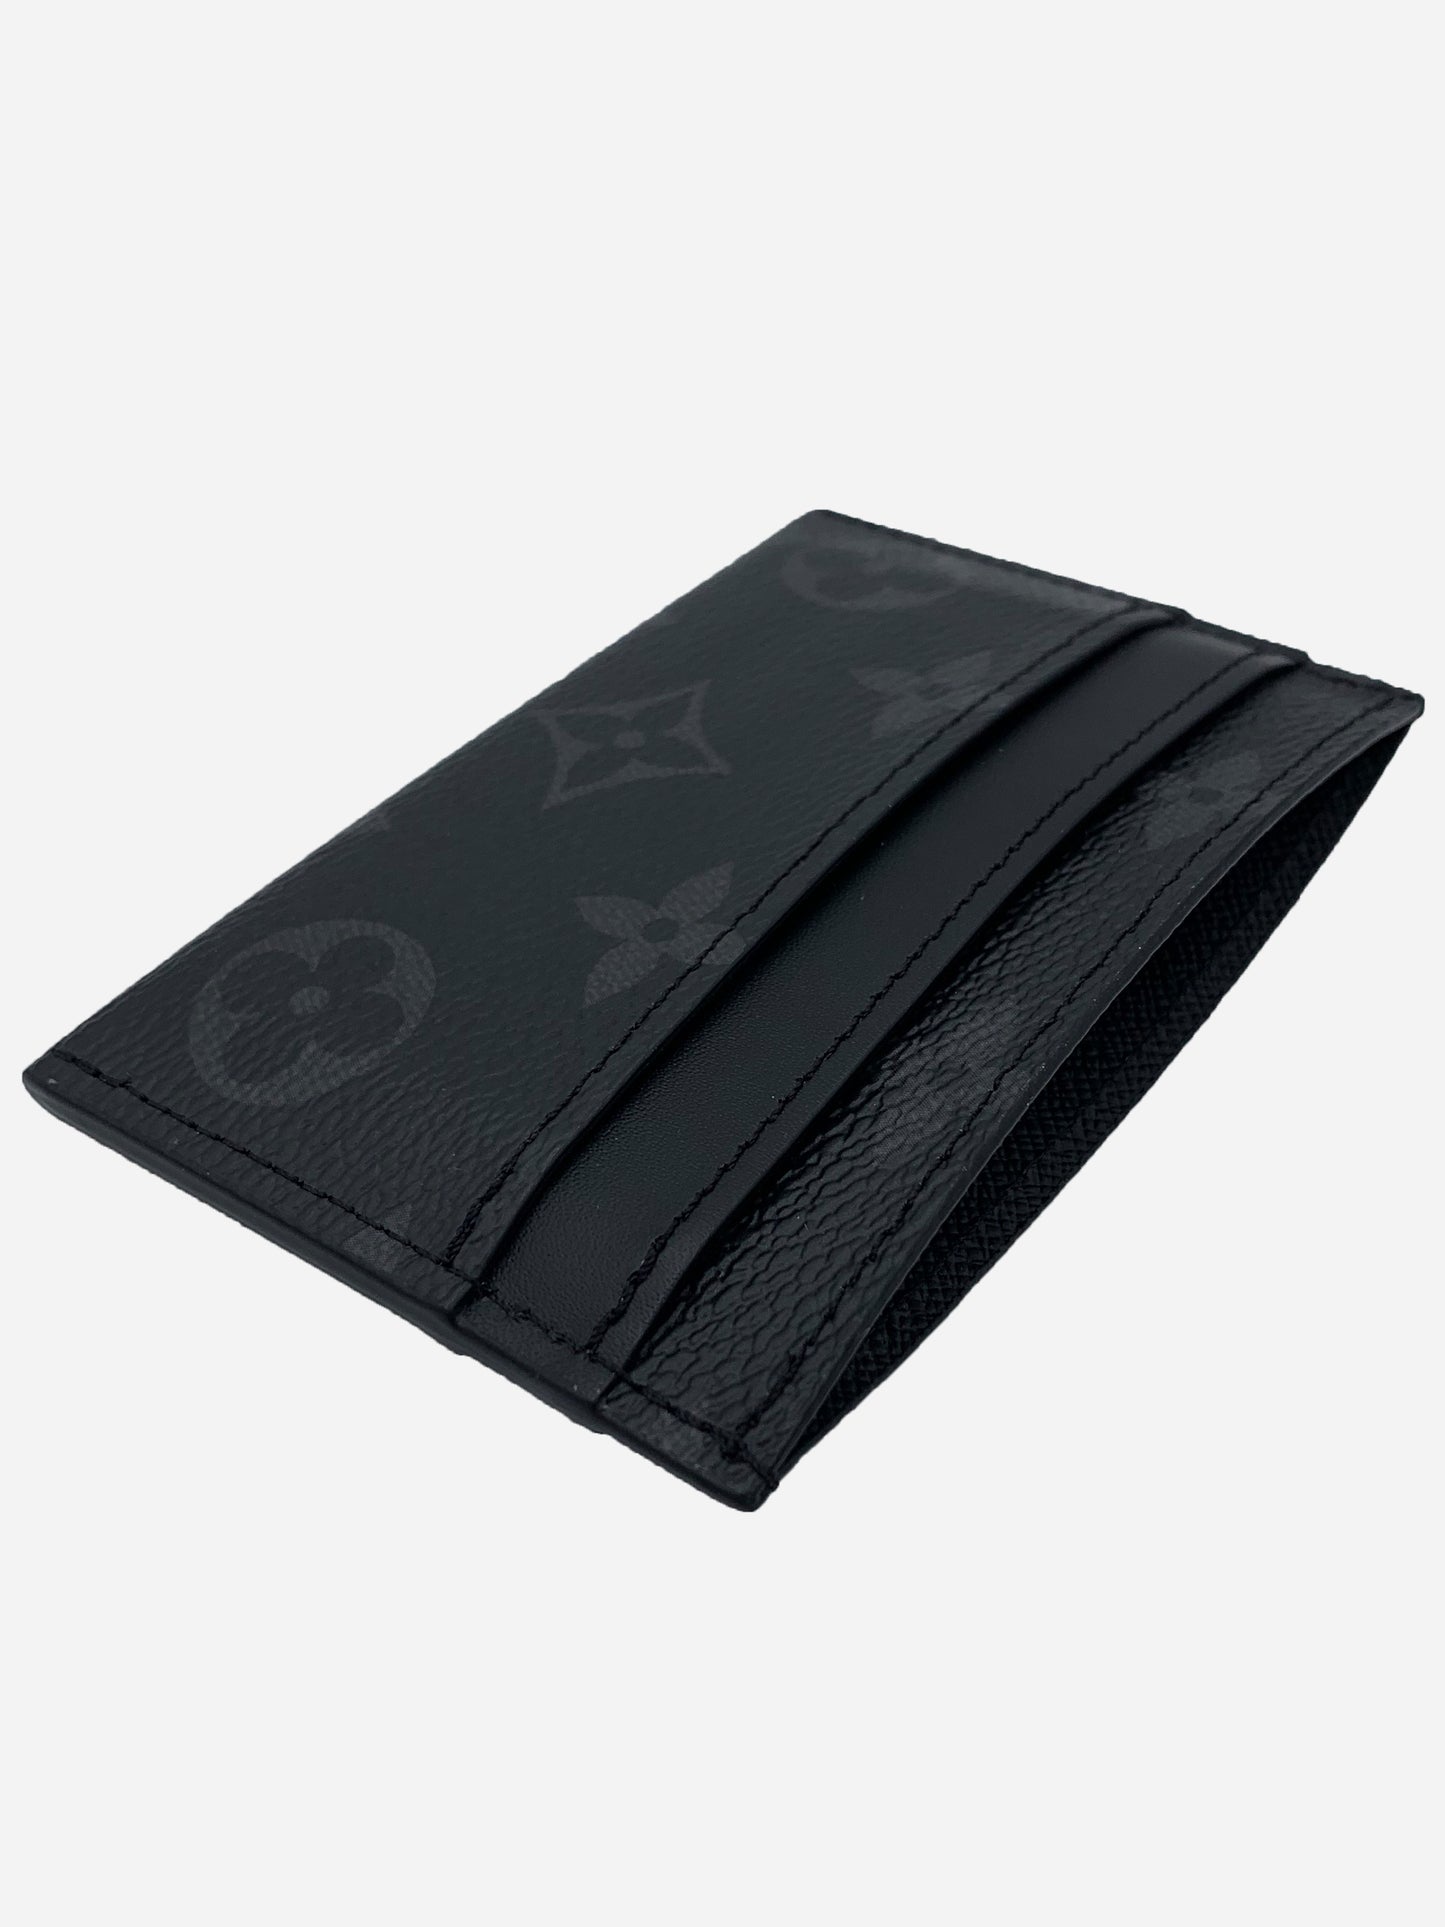 Louis Vuitton Double Cardholder Wallet - Monogram Eclipse Brand